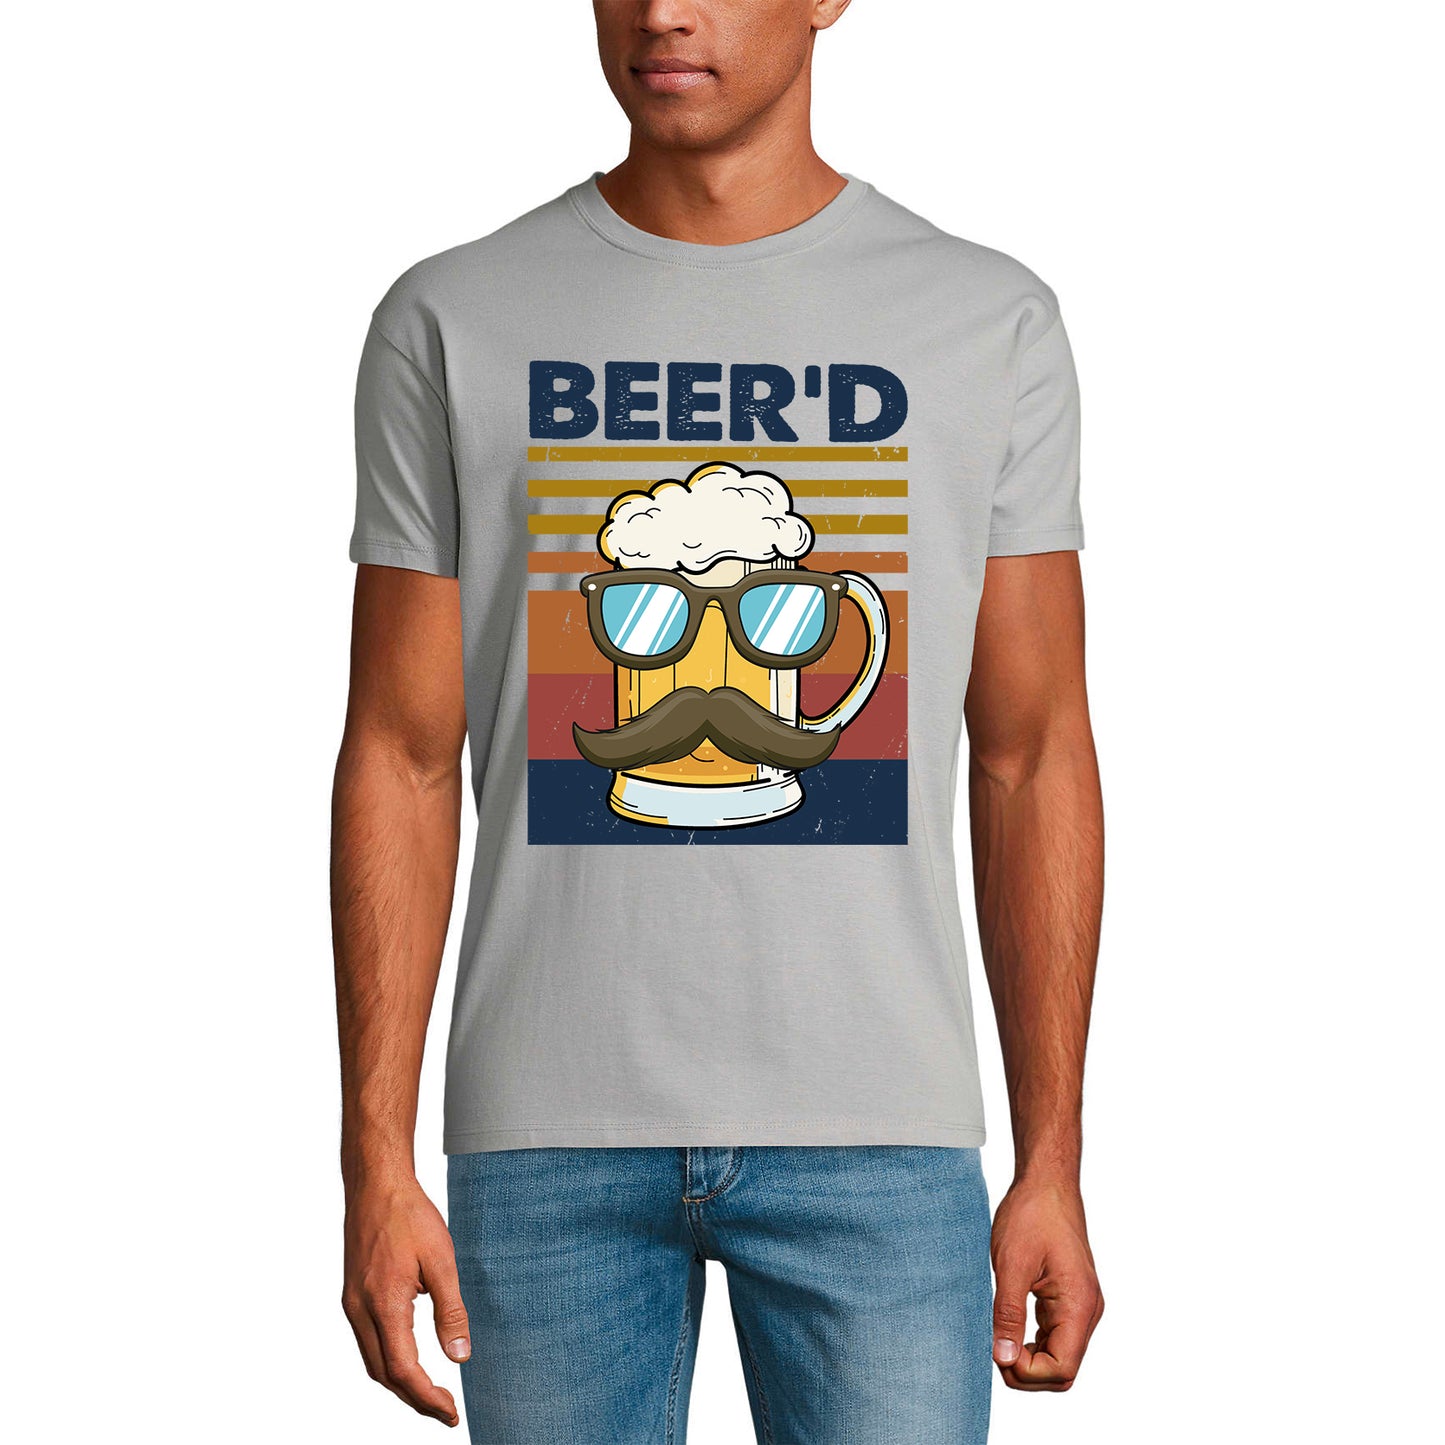 ULTRABASIC Men's Novelty T-Shirt Beer'd - Funny Beer Gentleman Tee Shirt